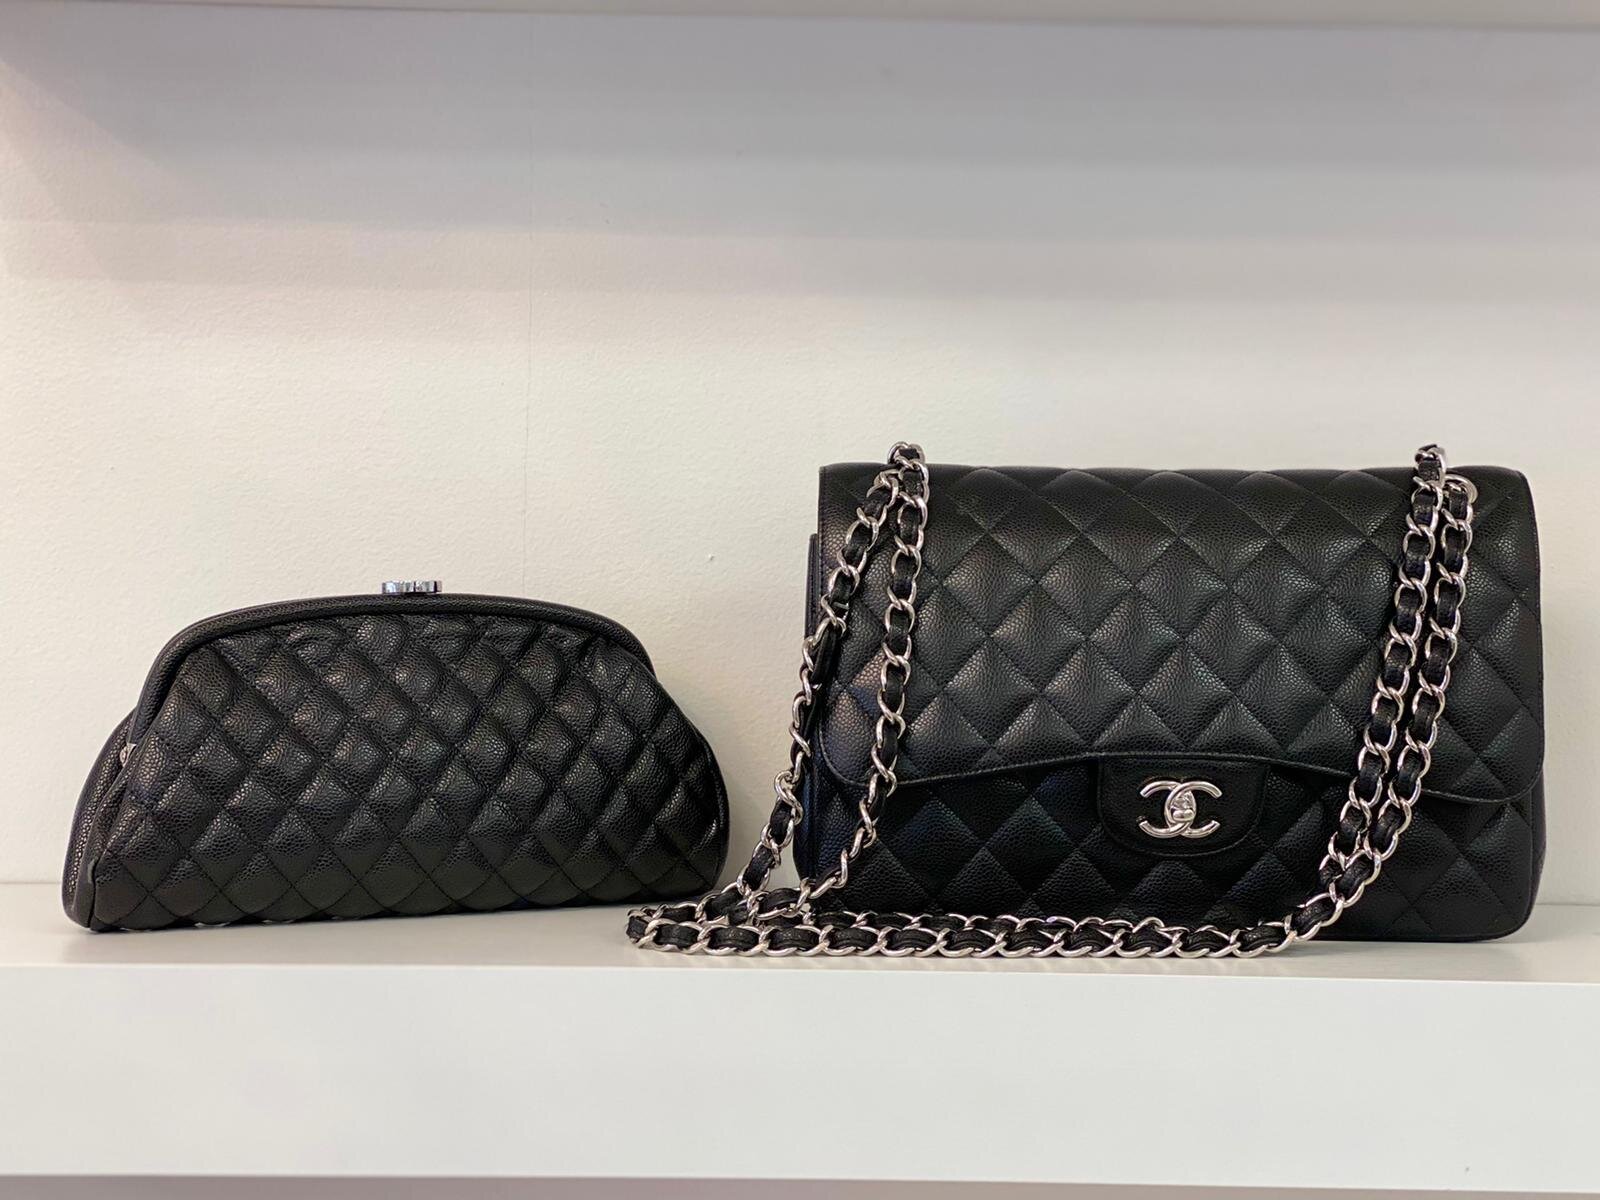 Sell Your Handbags Boca Raton - Chanel, Louis Vuitton